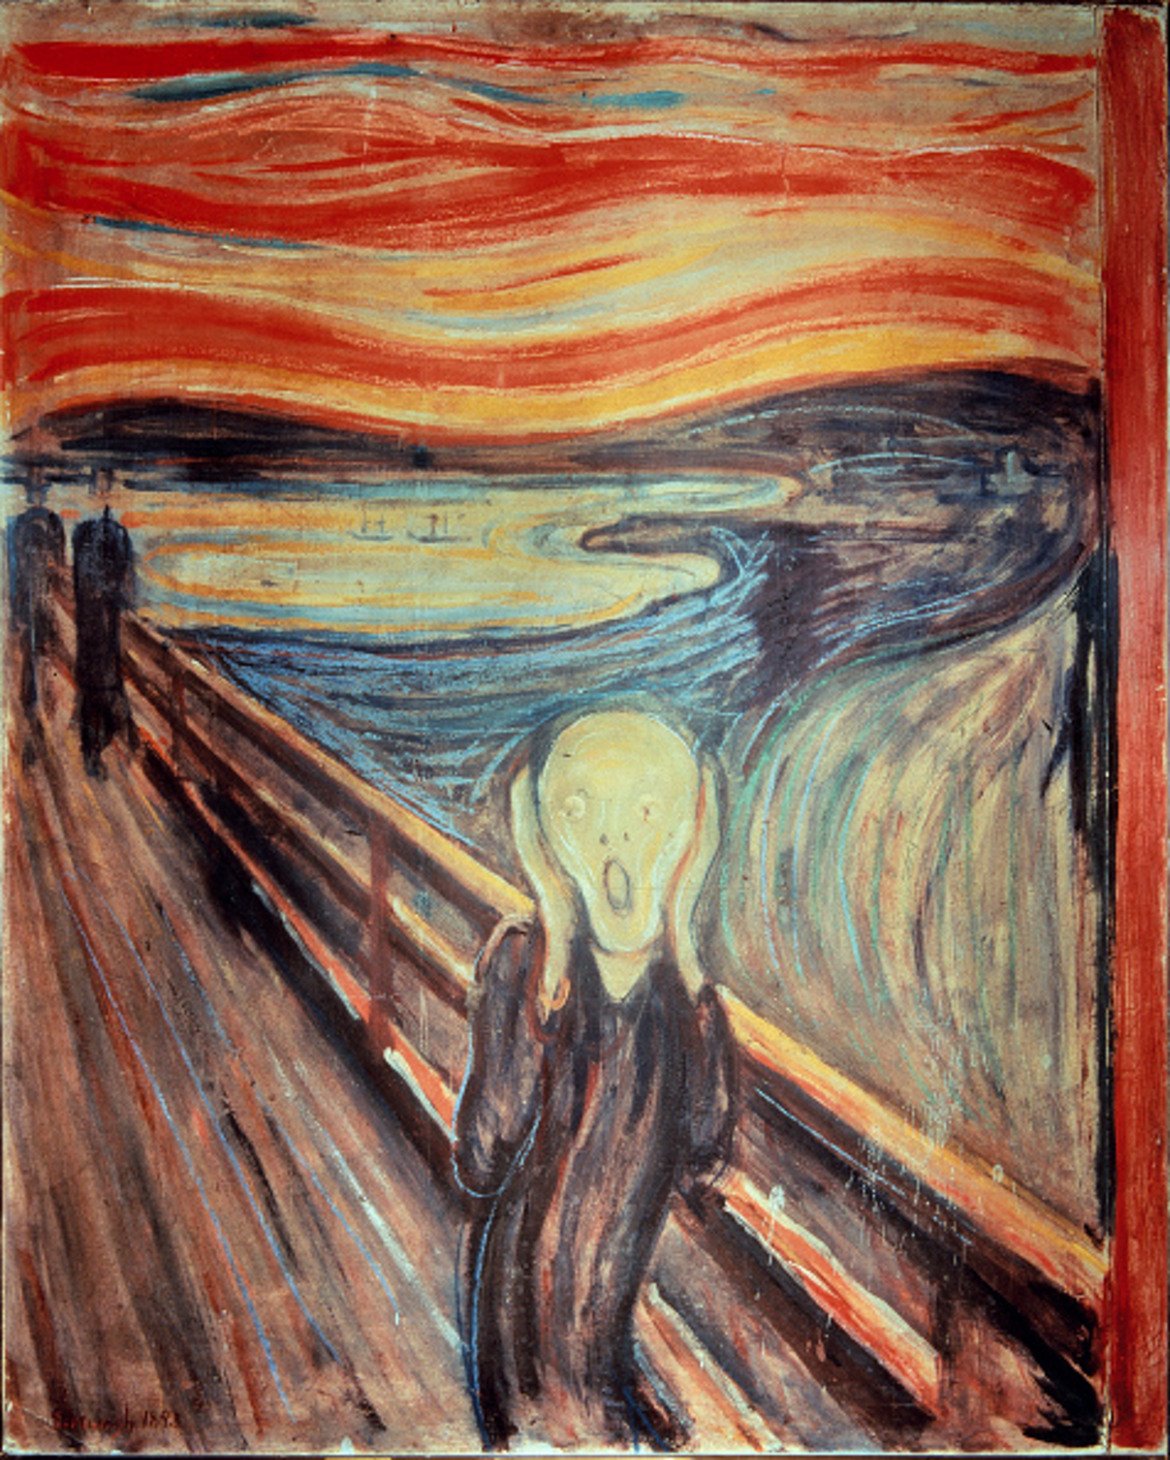 Произведение на изкуството
Известната картина „Писъкът“ на Едвард Мунк бе продадена за 103 млн. евро, а за 180 млн. евро Флорентино Перес може да си я окачи в кабинета и пак да му останат пари, за да си върне Мората след два сезона.